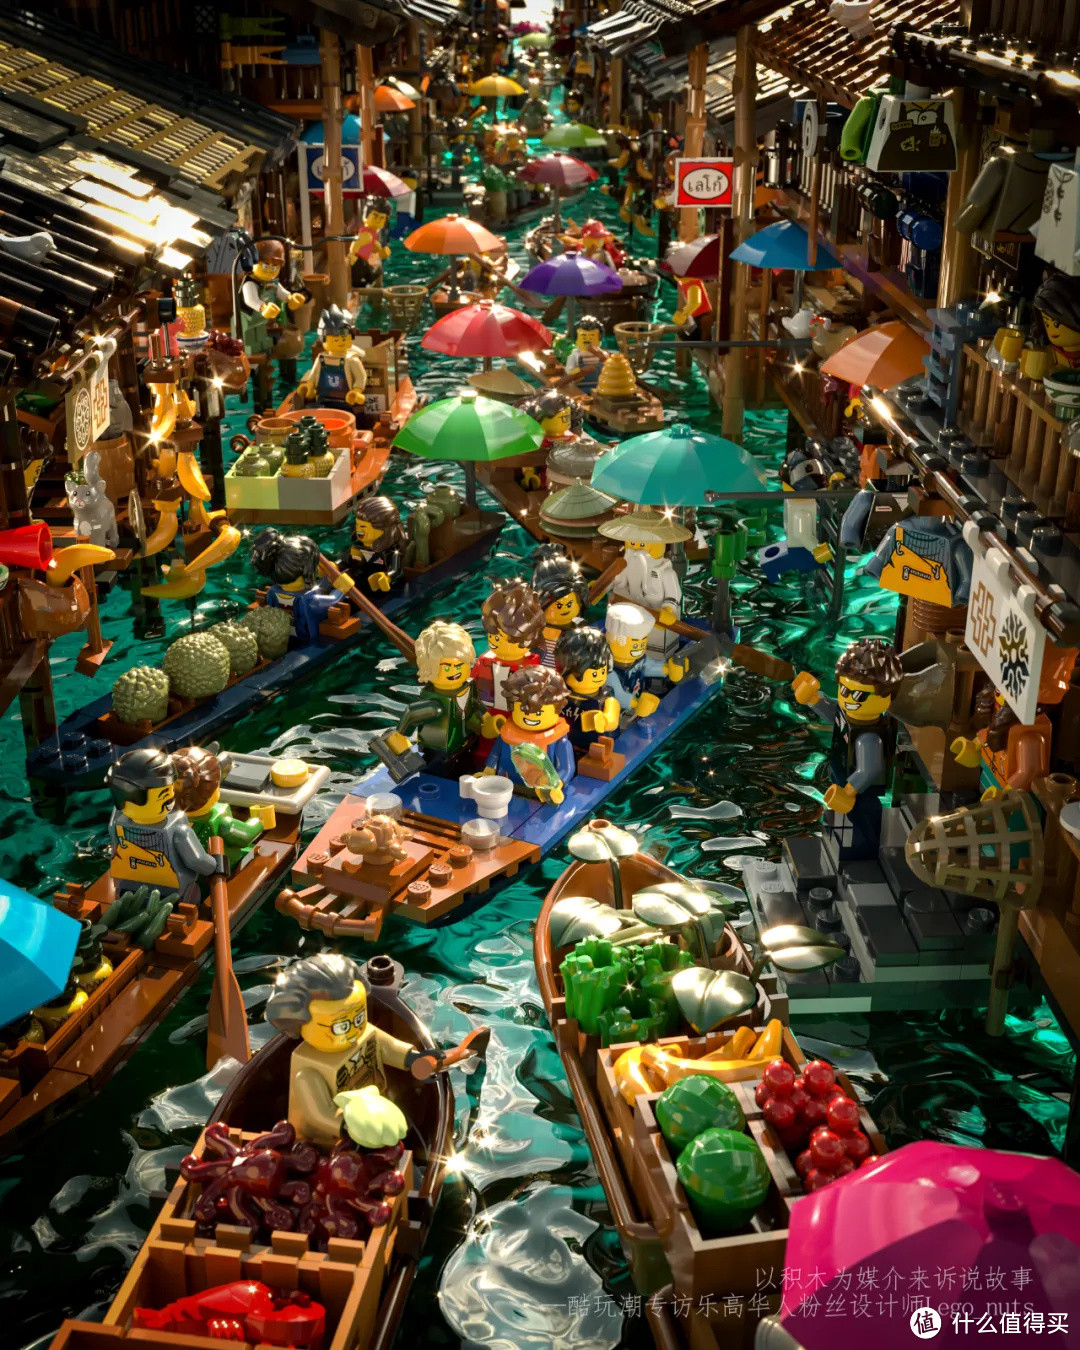 水上市场 Floating market